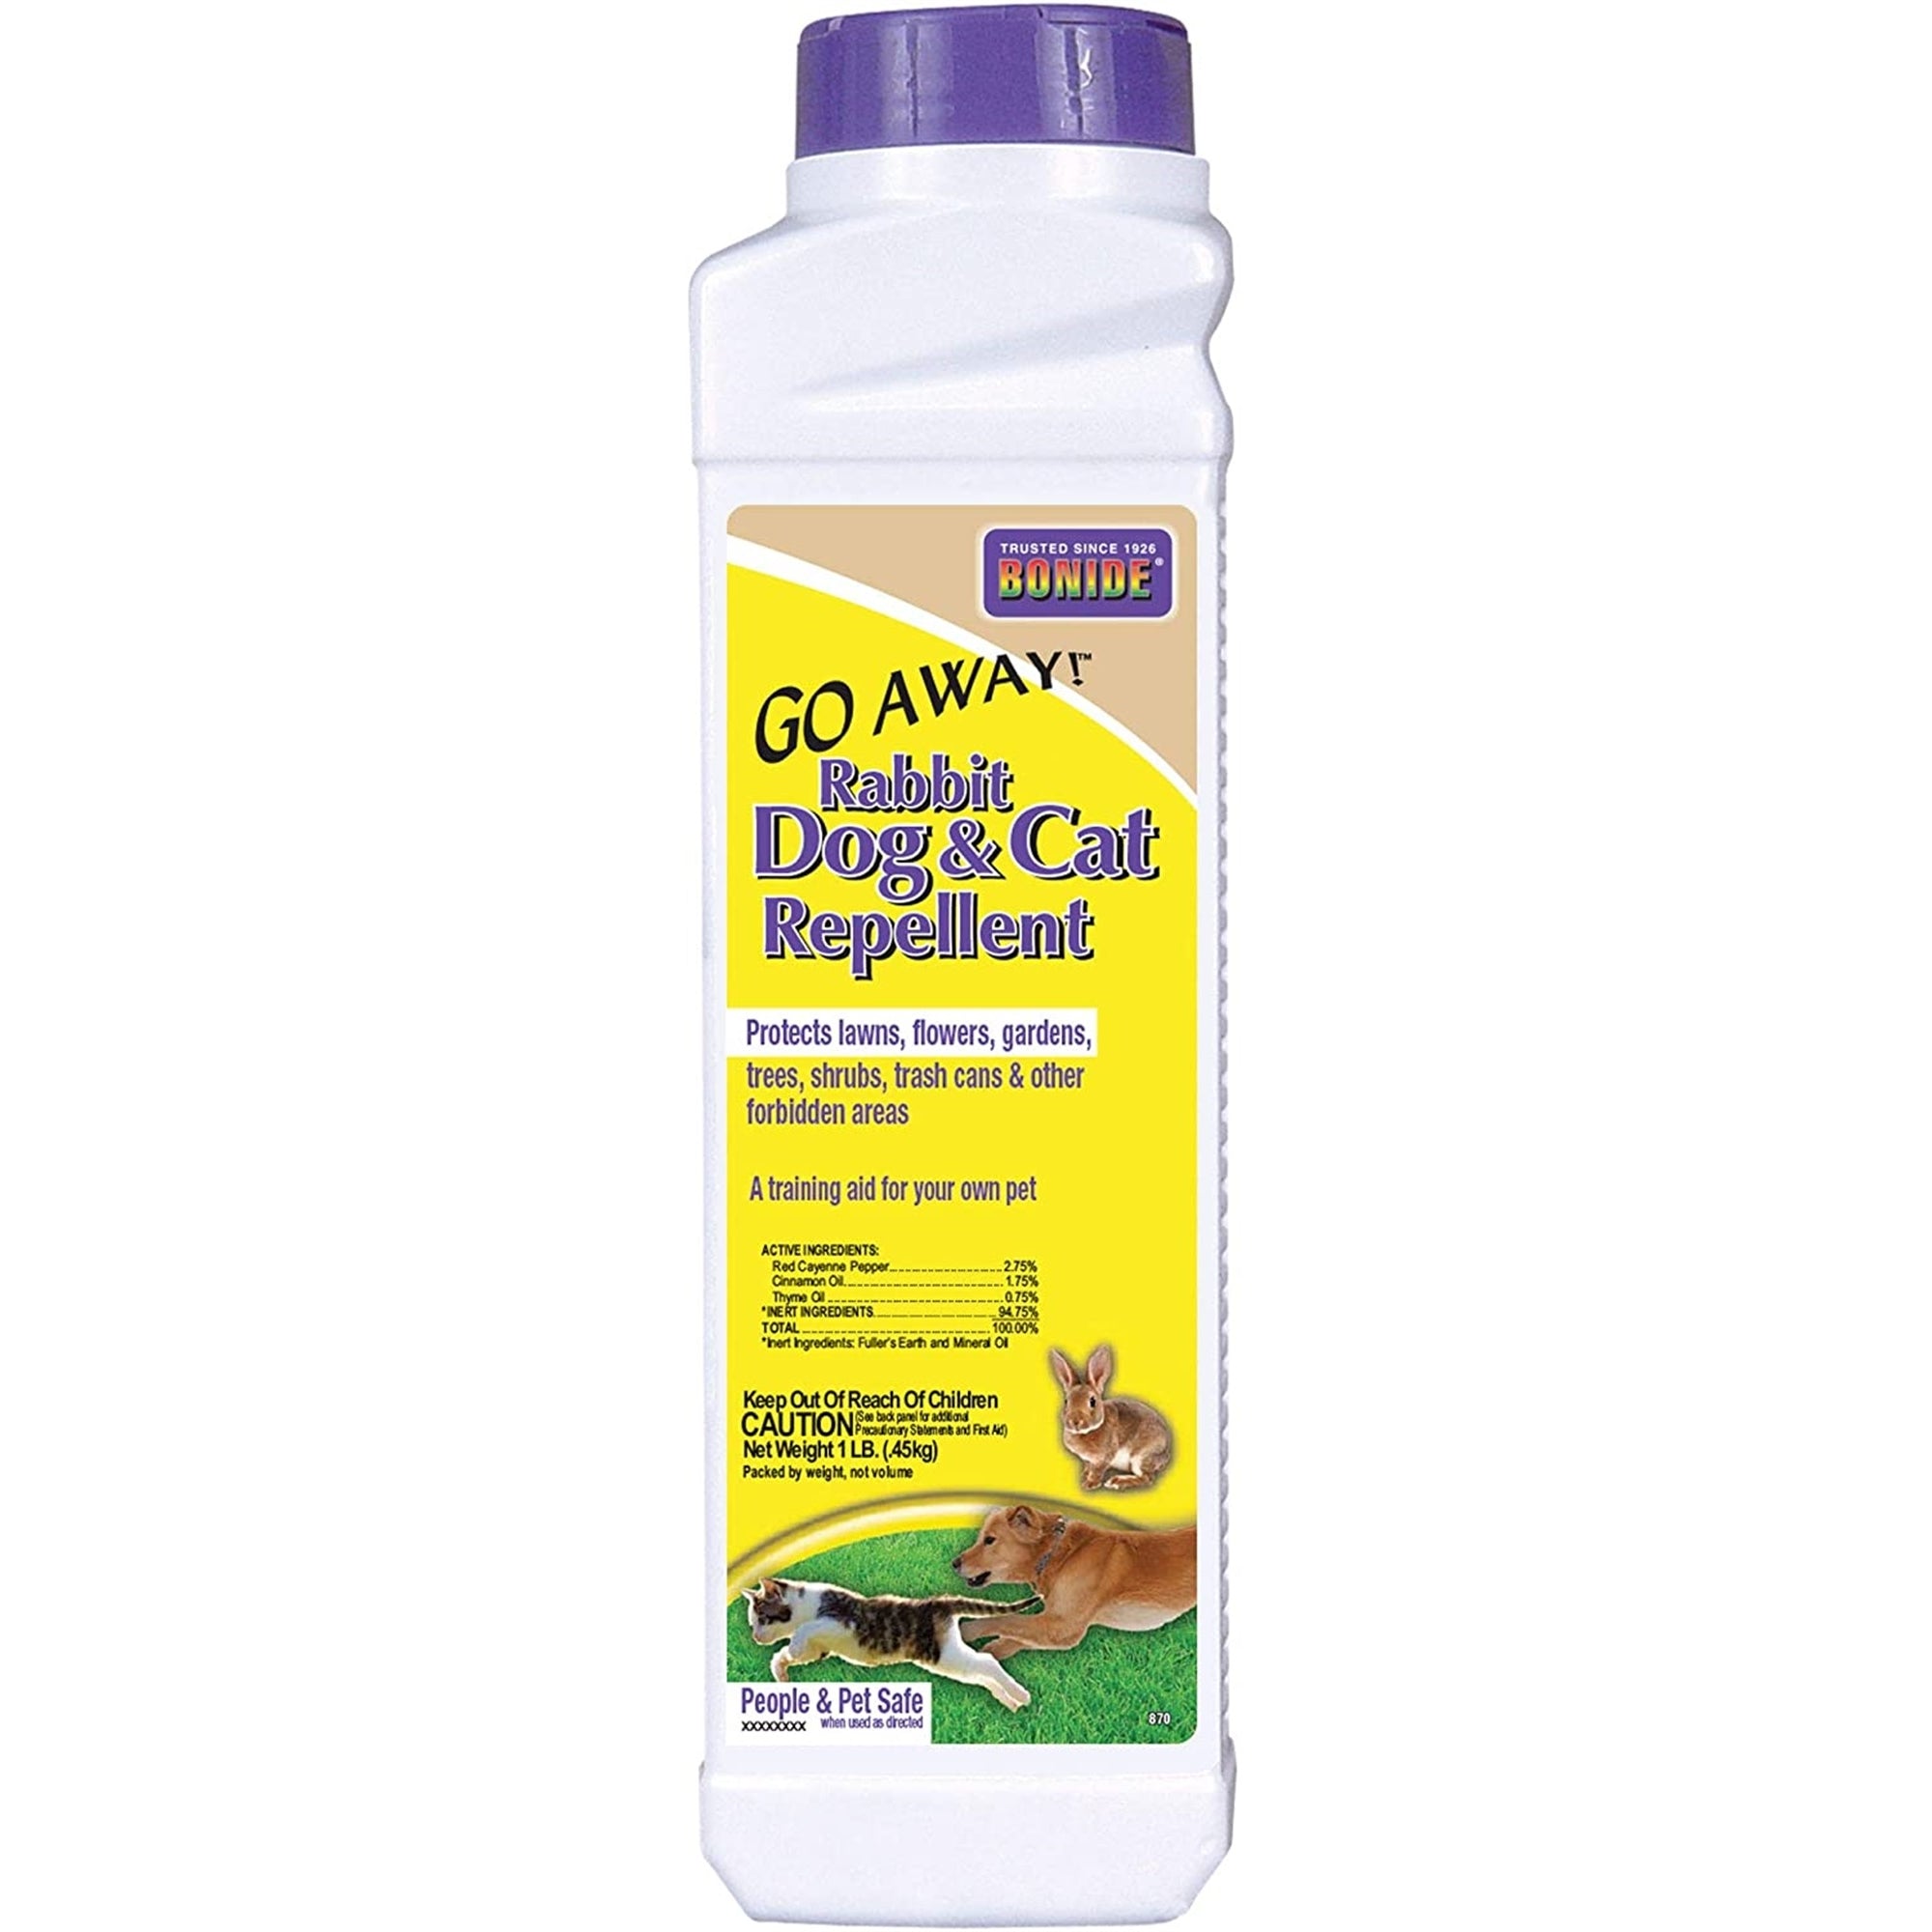 Bonide (#870) Go Away! Rabbit, Dog, & Cat Repellent Granules, 1lb